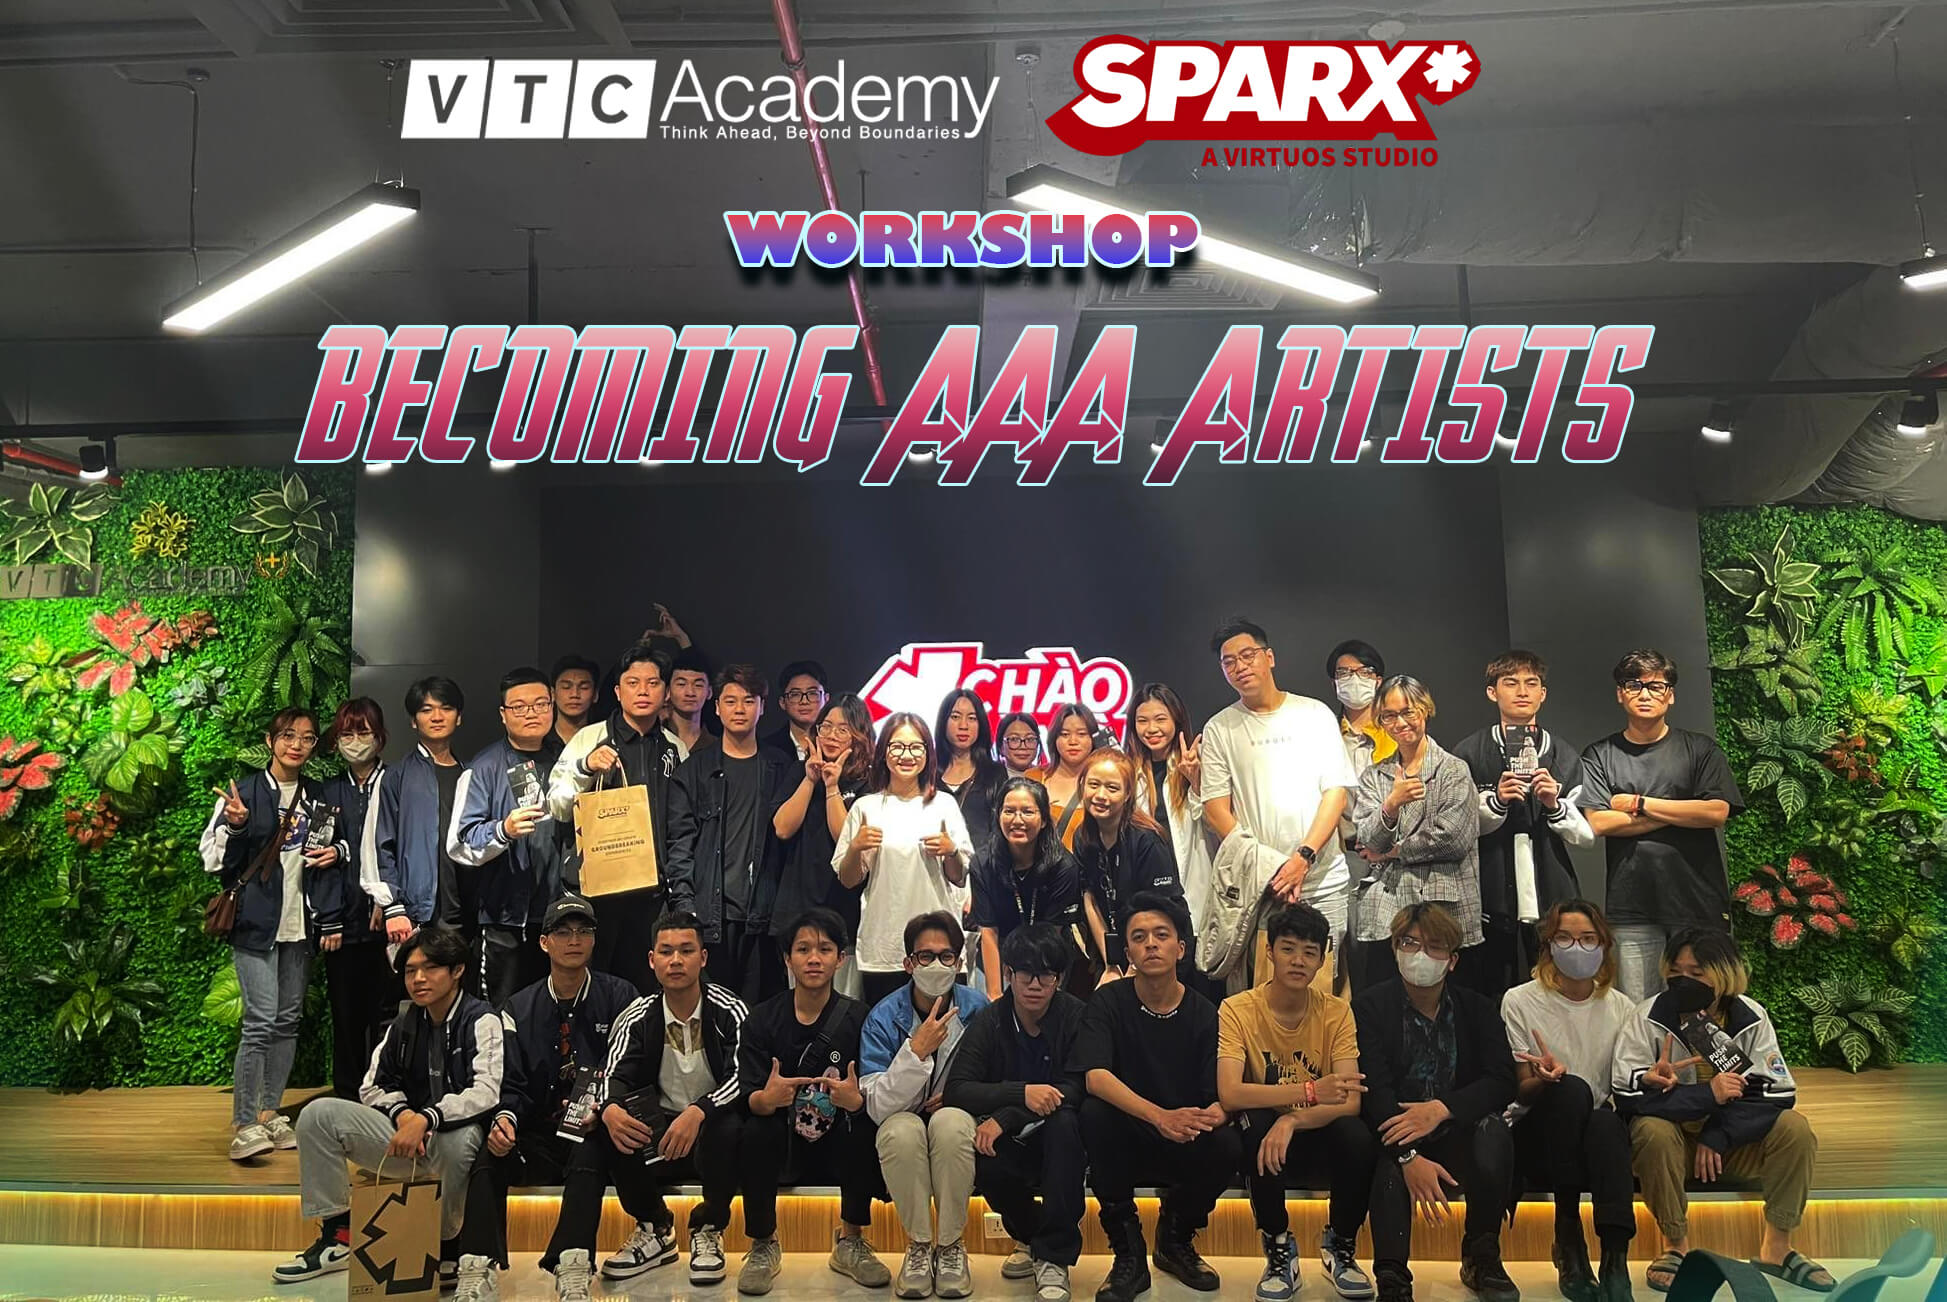 VTC Academy X Sparx*: Workshop “Becoming AAA Artists”: Nâng cao kỹ năng và khám phá con đường phát triển trong thiết kế 3D